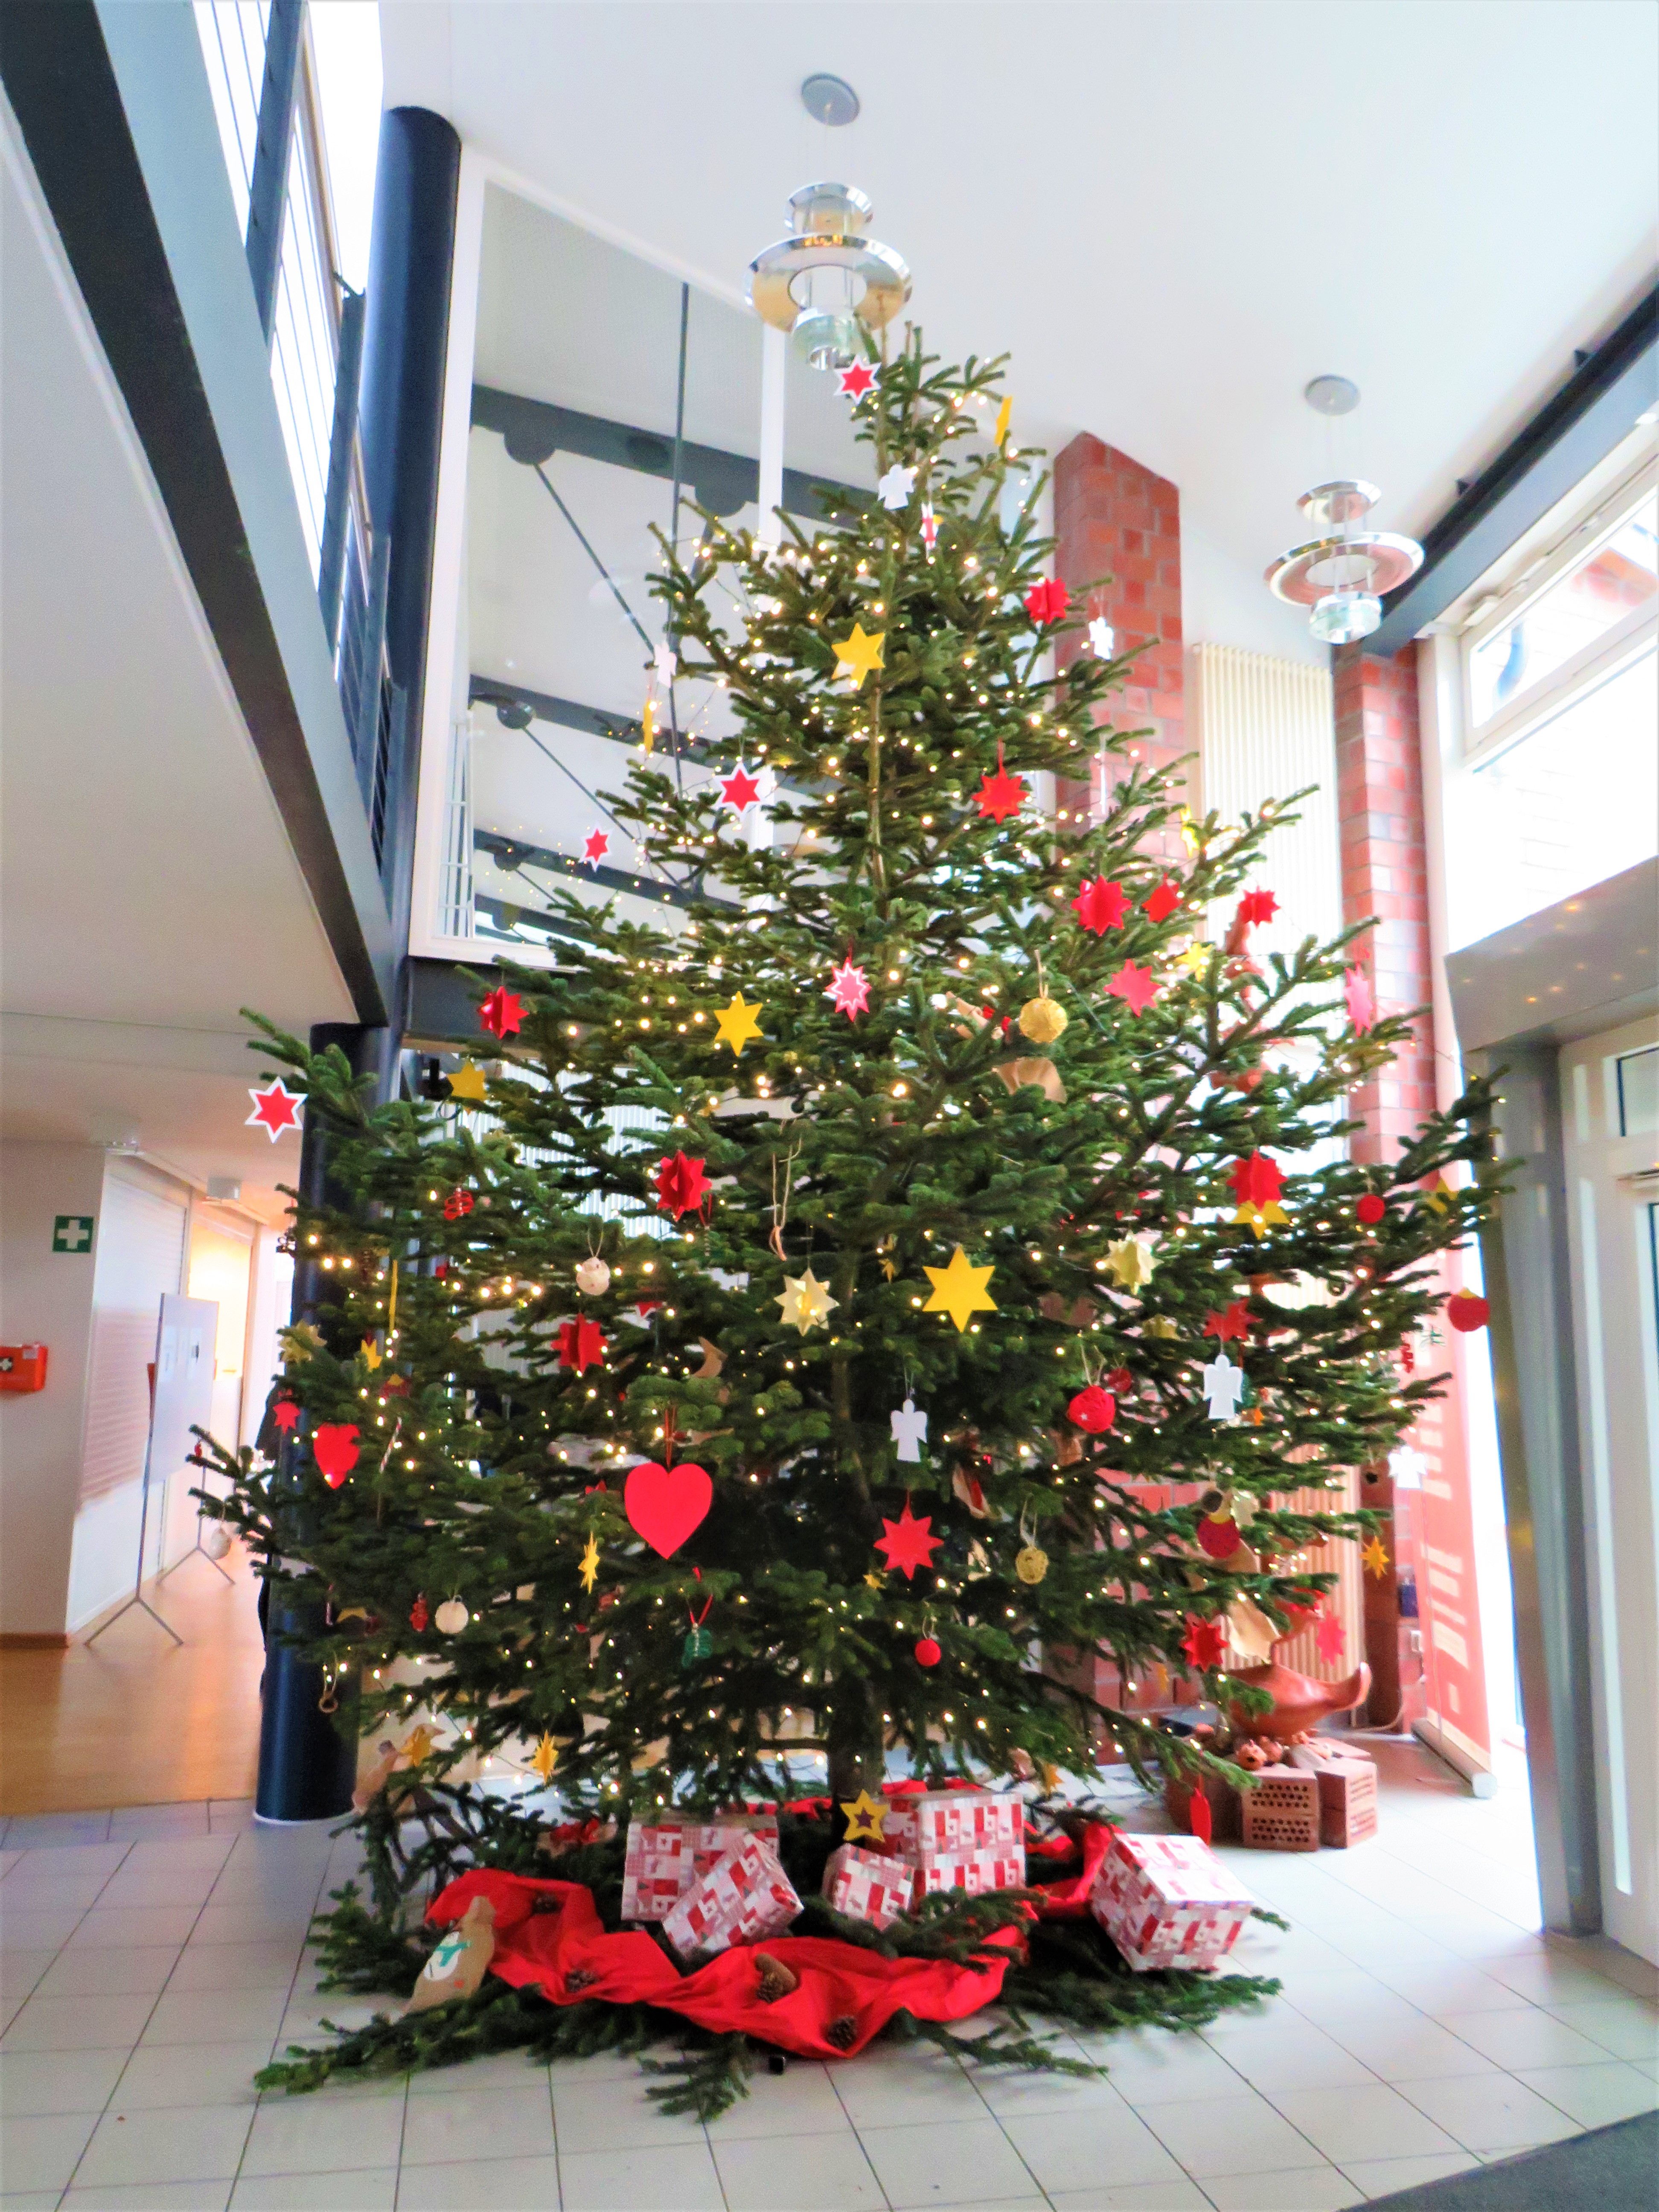 Foto (Gemeinde Lehre): Der Weihnachtsbaum in Eingangsbereich des Rathauses